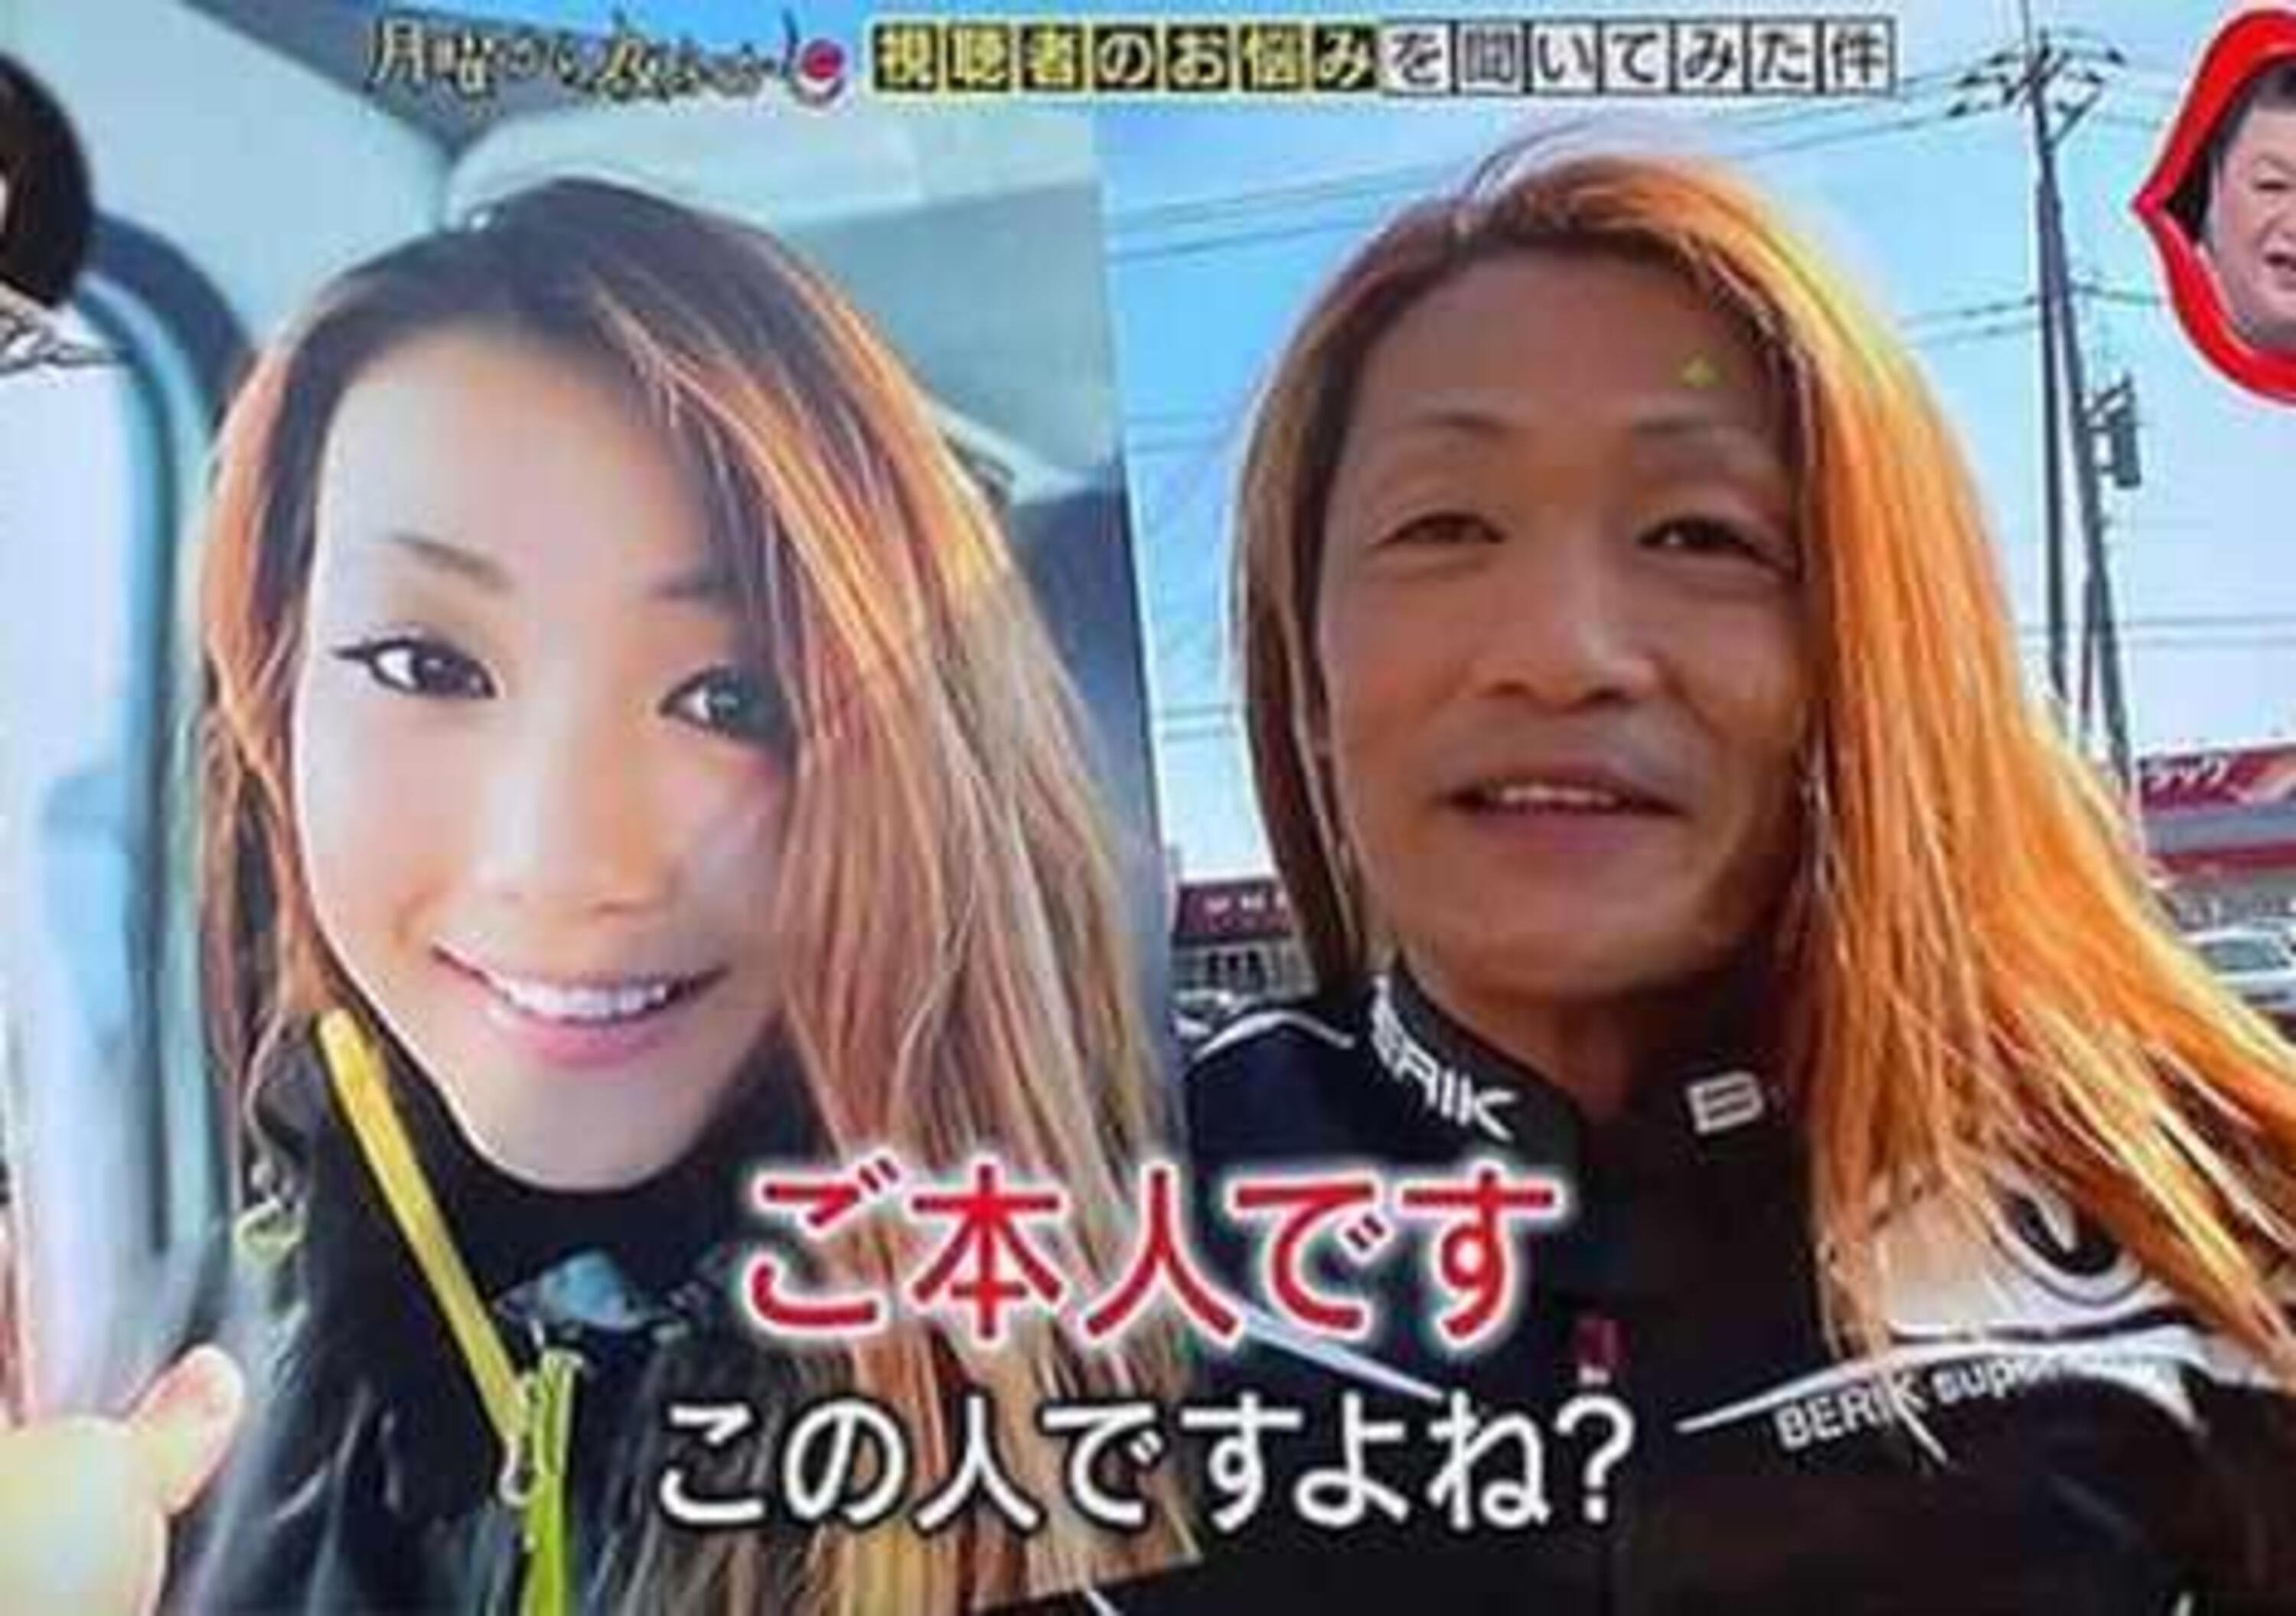 Giappone: la giovane influencer motociclista &egrave; in realt&agrave; un cinquantenne mago di Faceapp. Smascherato